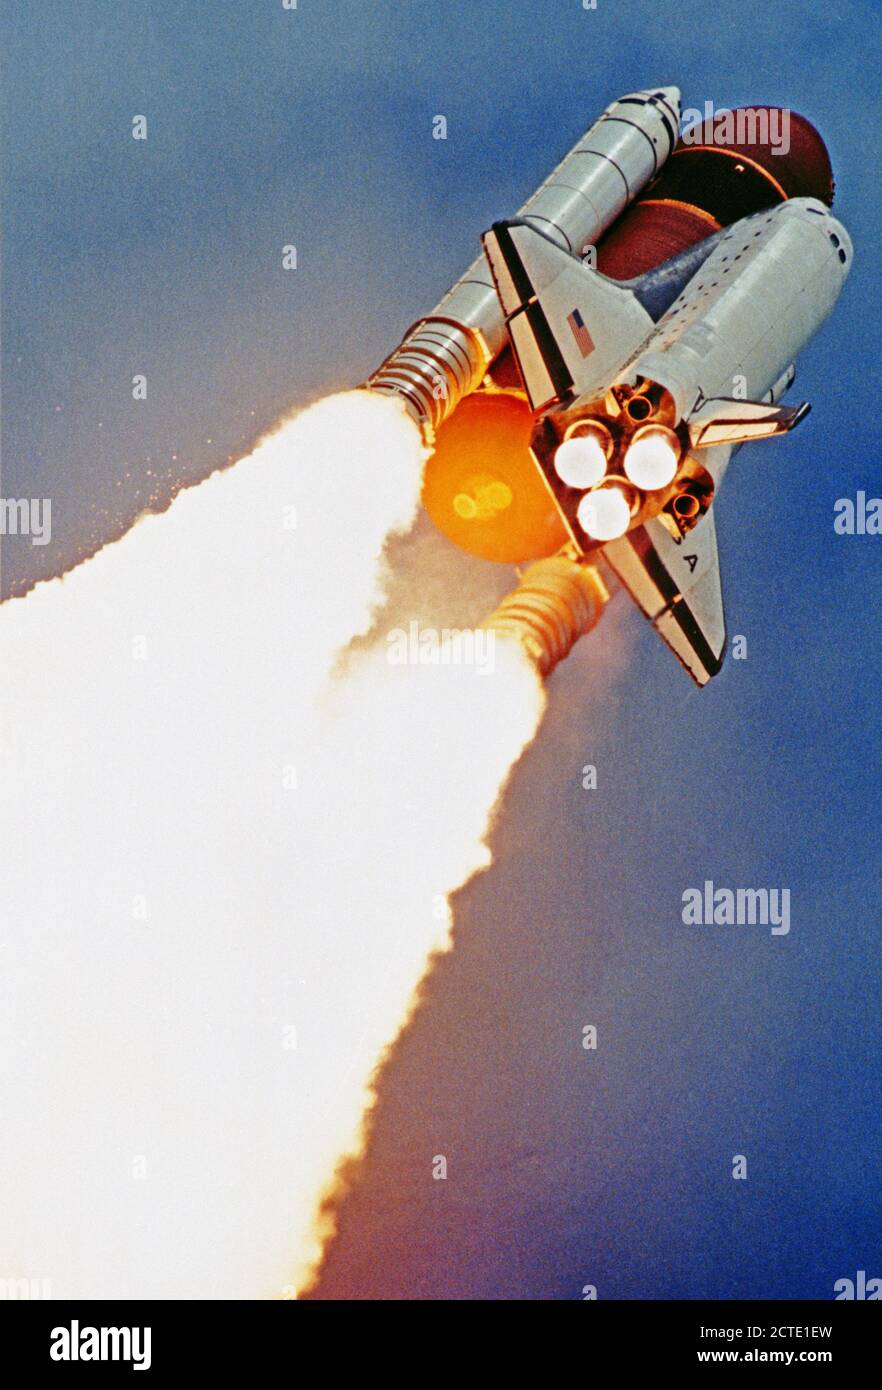 (5 Juni 1991) --- das Space Shuttle Columbia, mit einer siebenköpfigen Besatzung an Bord, steigt auf einen 9-tägigen Mission in Life Sciences Forschung gewidmet. Start war um 9:24:51 Uhr (EDT), 5. Juni 1991. Diese 35-mm-Foto wurde von einer Fernbedienung tracking device genommen montiert 1600 Füße vom Epizentrum. Stockfoto